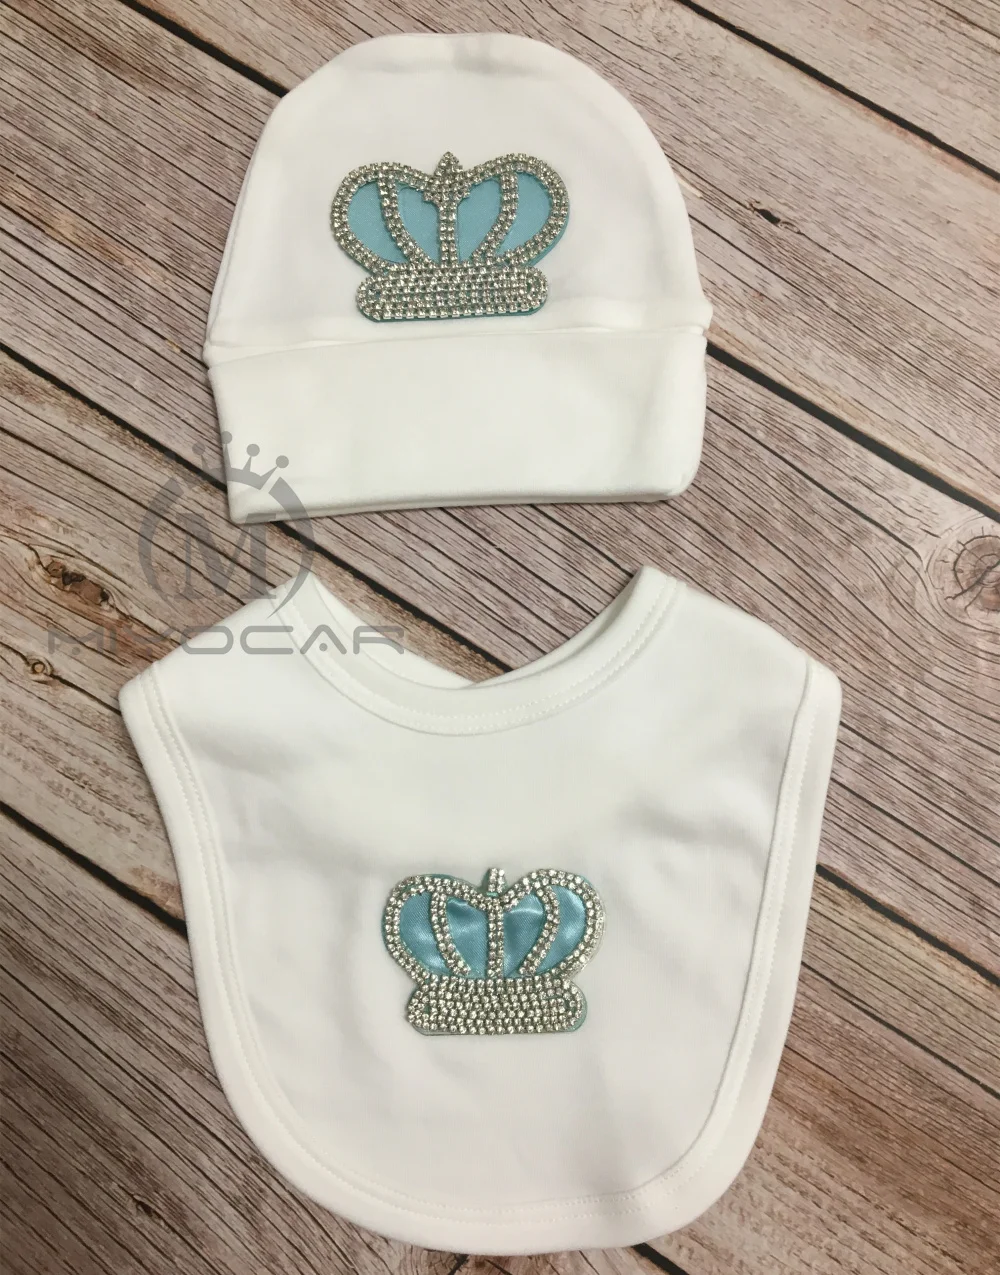 MIYOCAR/Модная хлопковая Корона из страз для детей от 0 до 6 месяцев, комплект с шапкой и нагрудником, уникальный дизайн, подарок для детского душа, шикарная детская одежда HB8